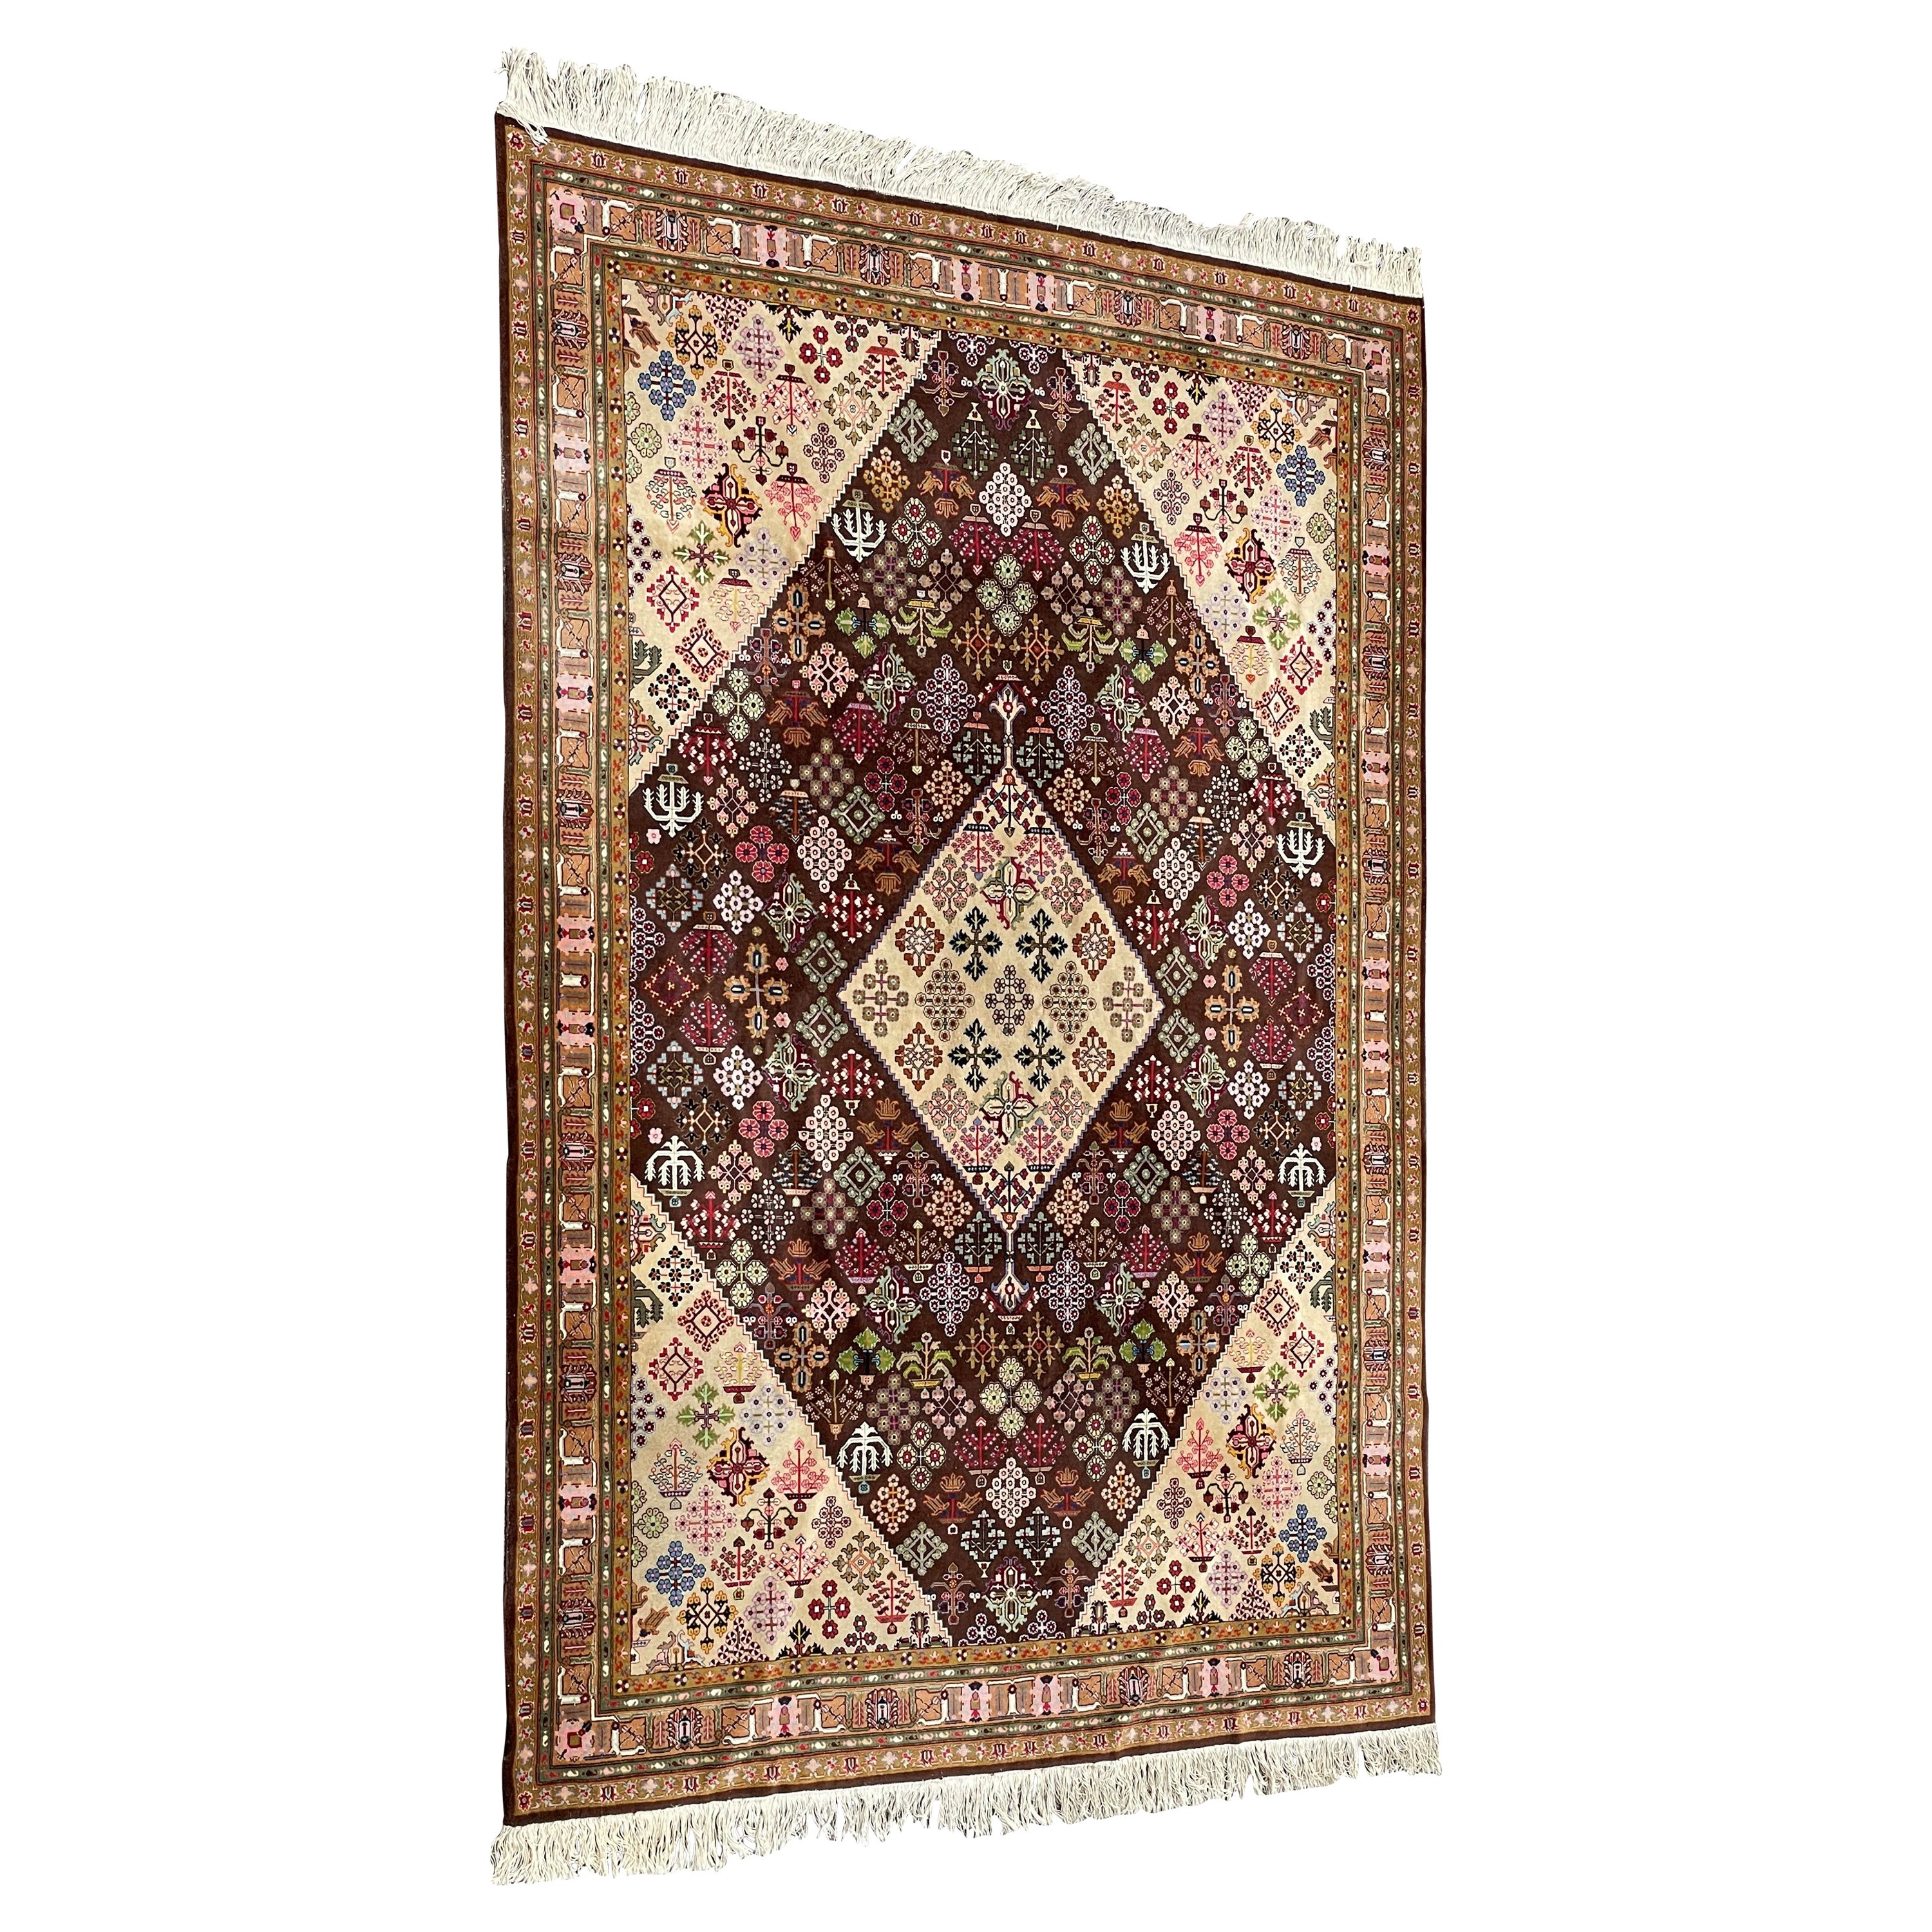 Gute Größe & gut aussehender handgeknüpfter Vintage-Teppich mit lebhaften Farben im Angebot